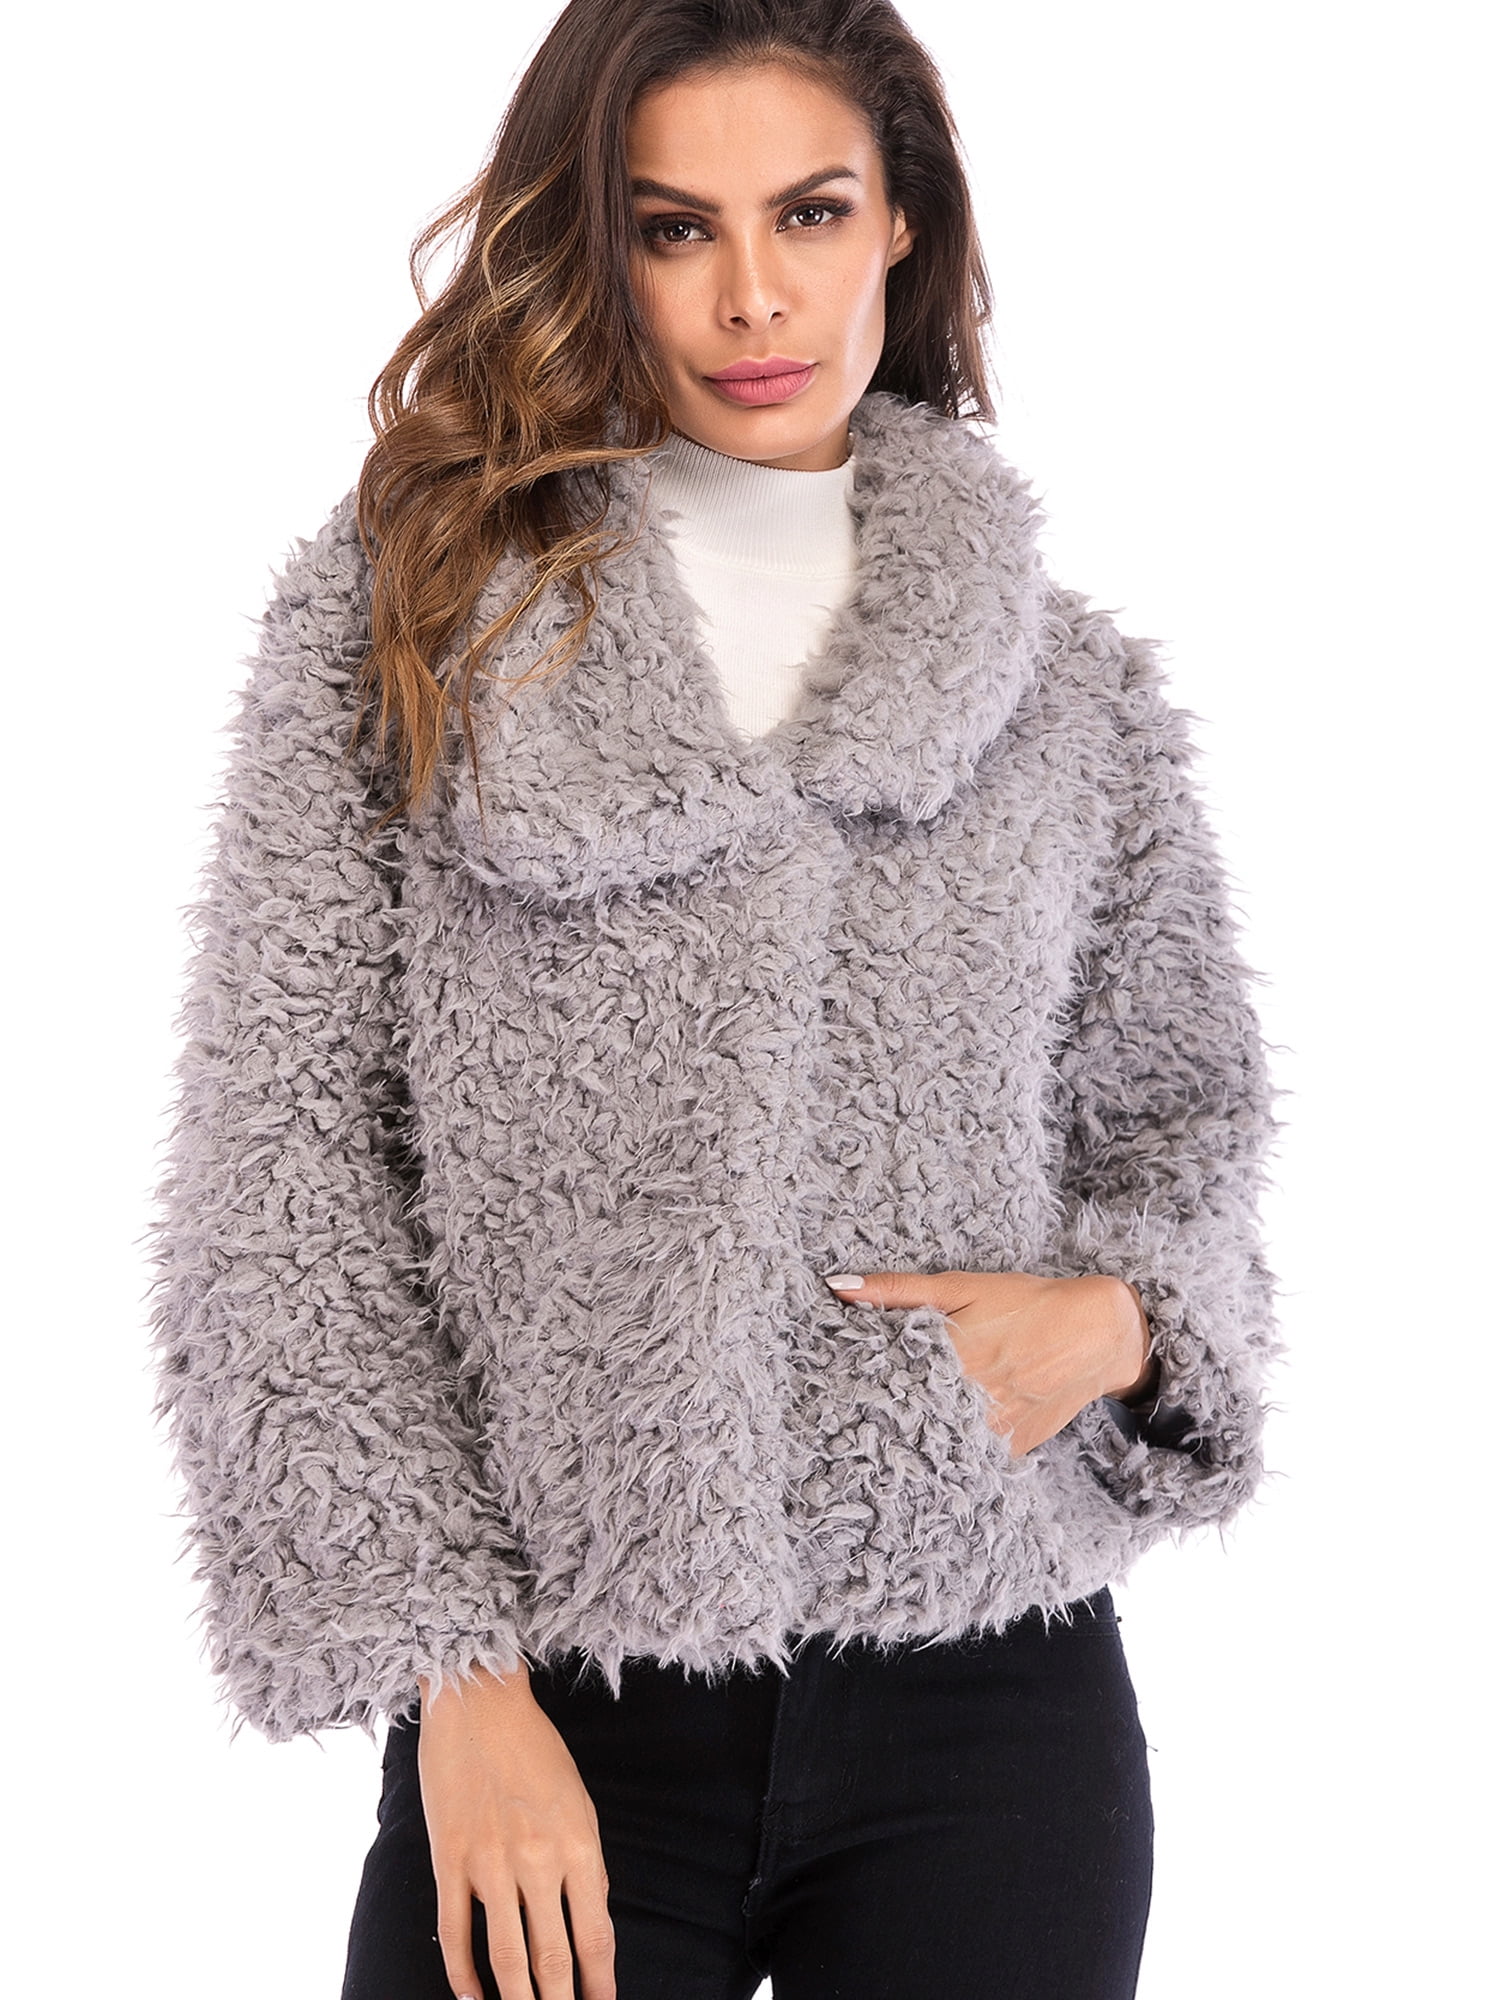 SAYFUT Women's Faux Fur Jacket Shaggy Jacket Winter Fleece Coat Outwear ...